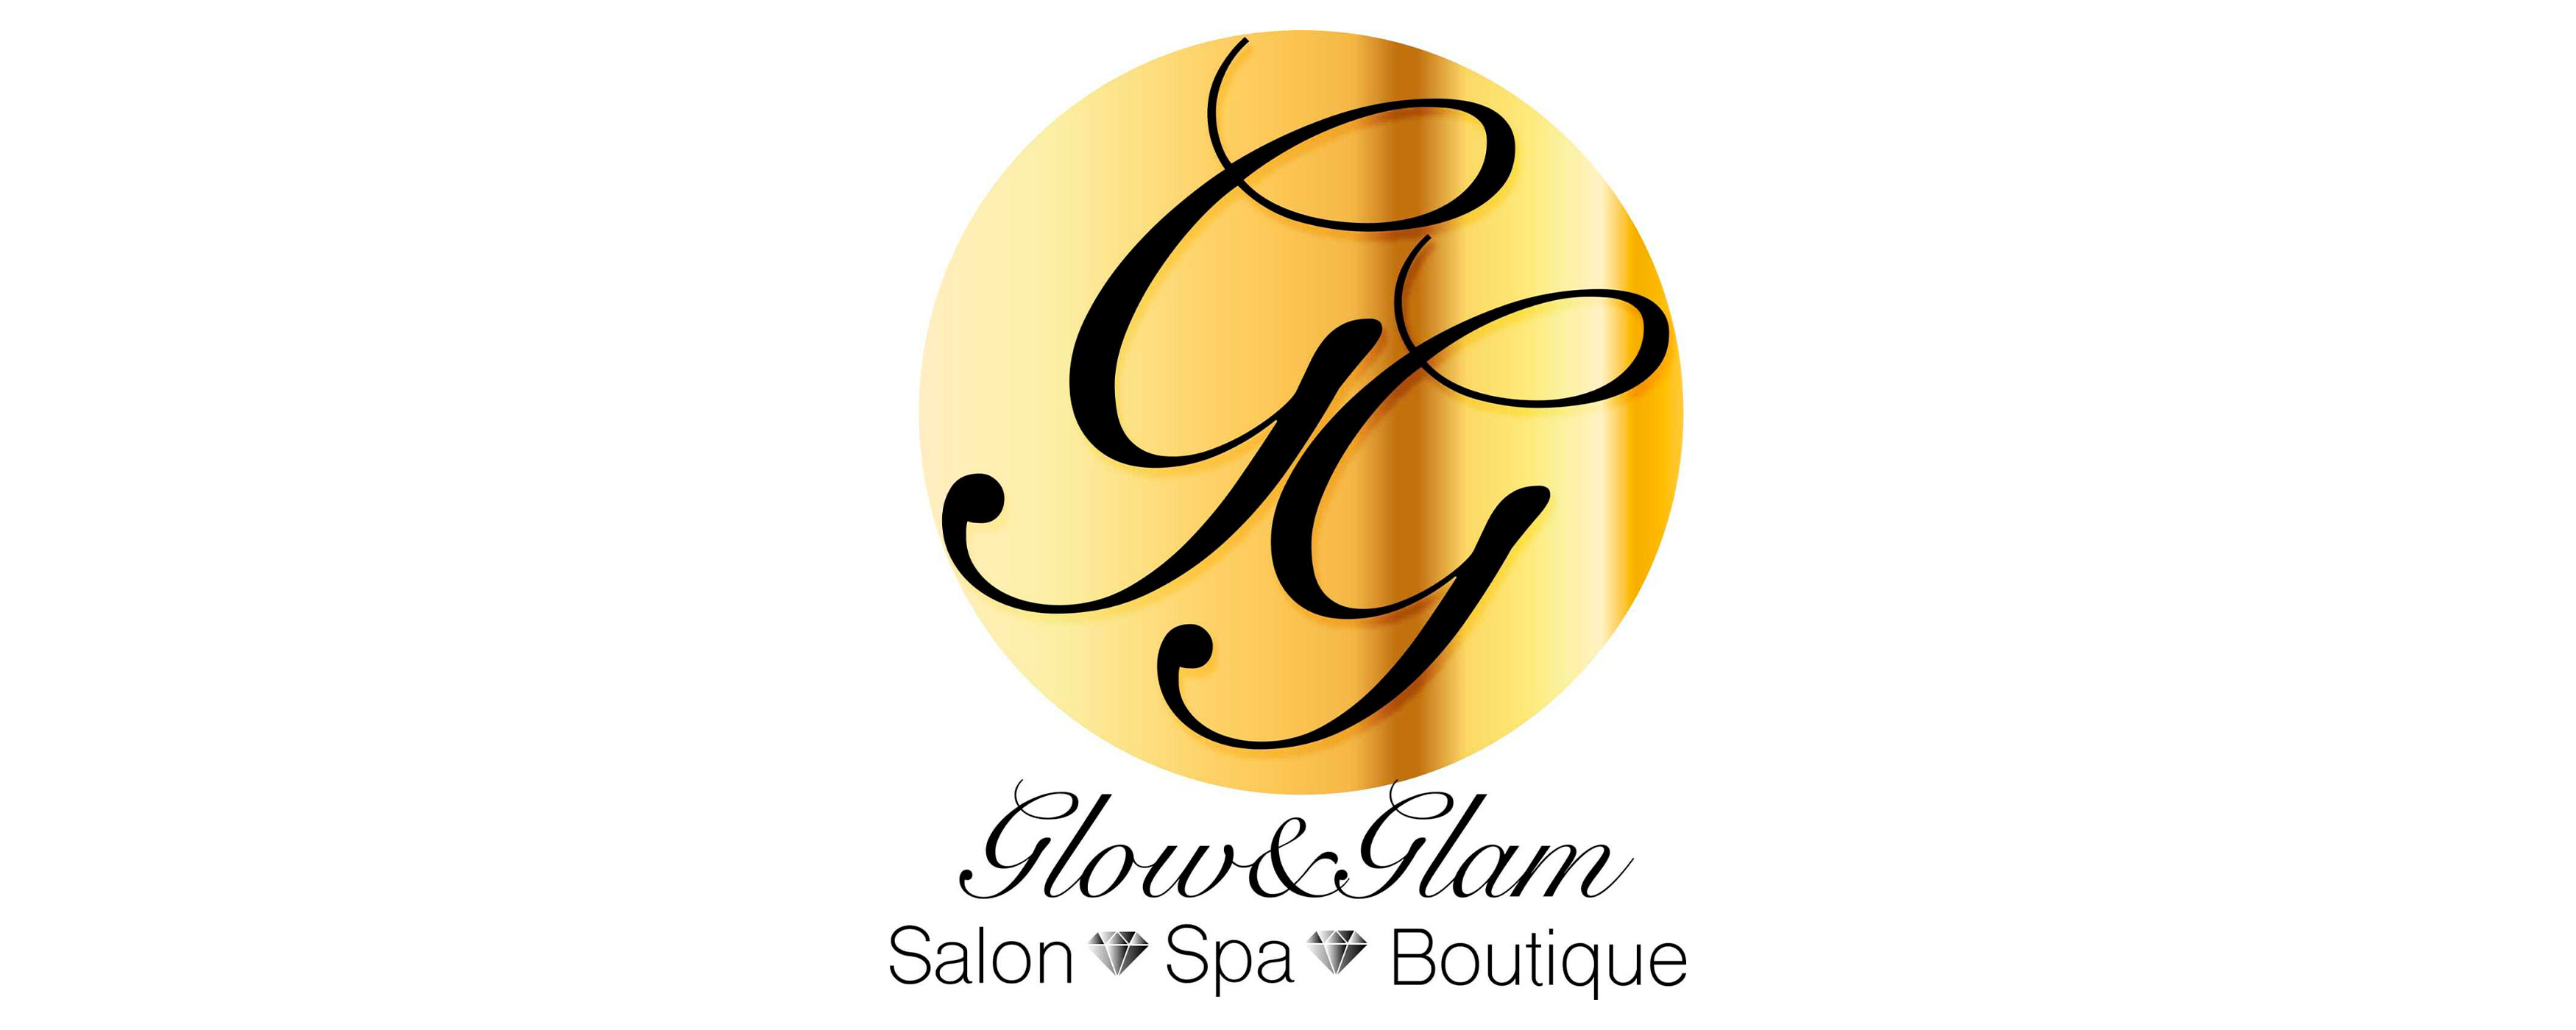 Glow & Glam Salon